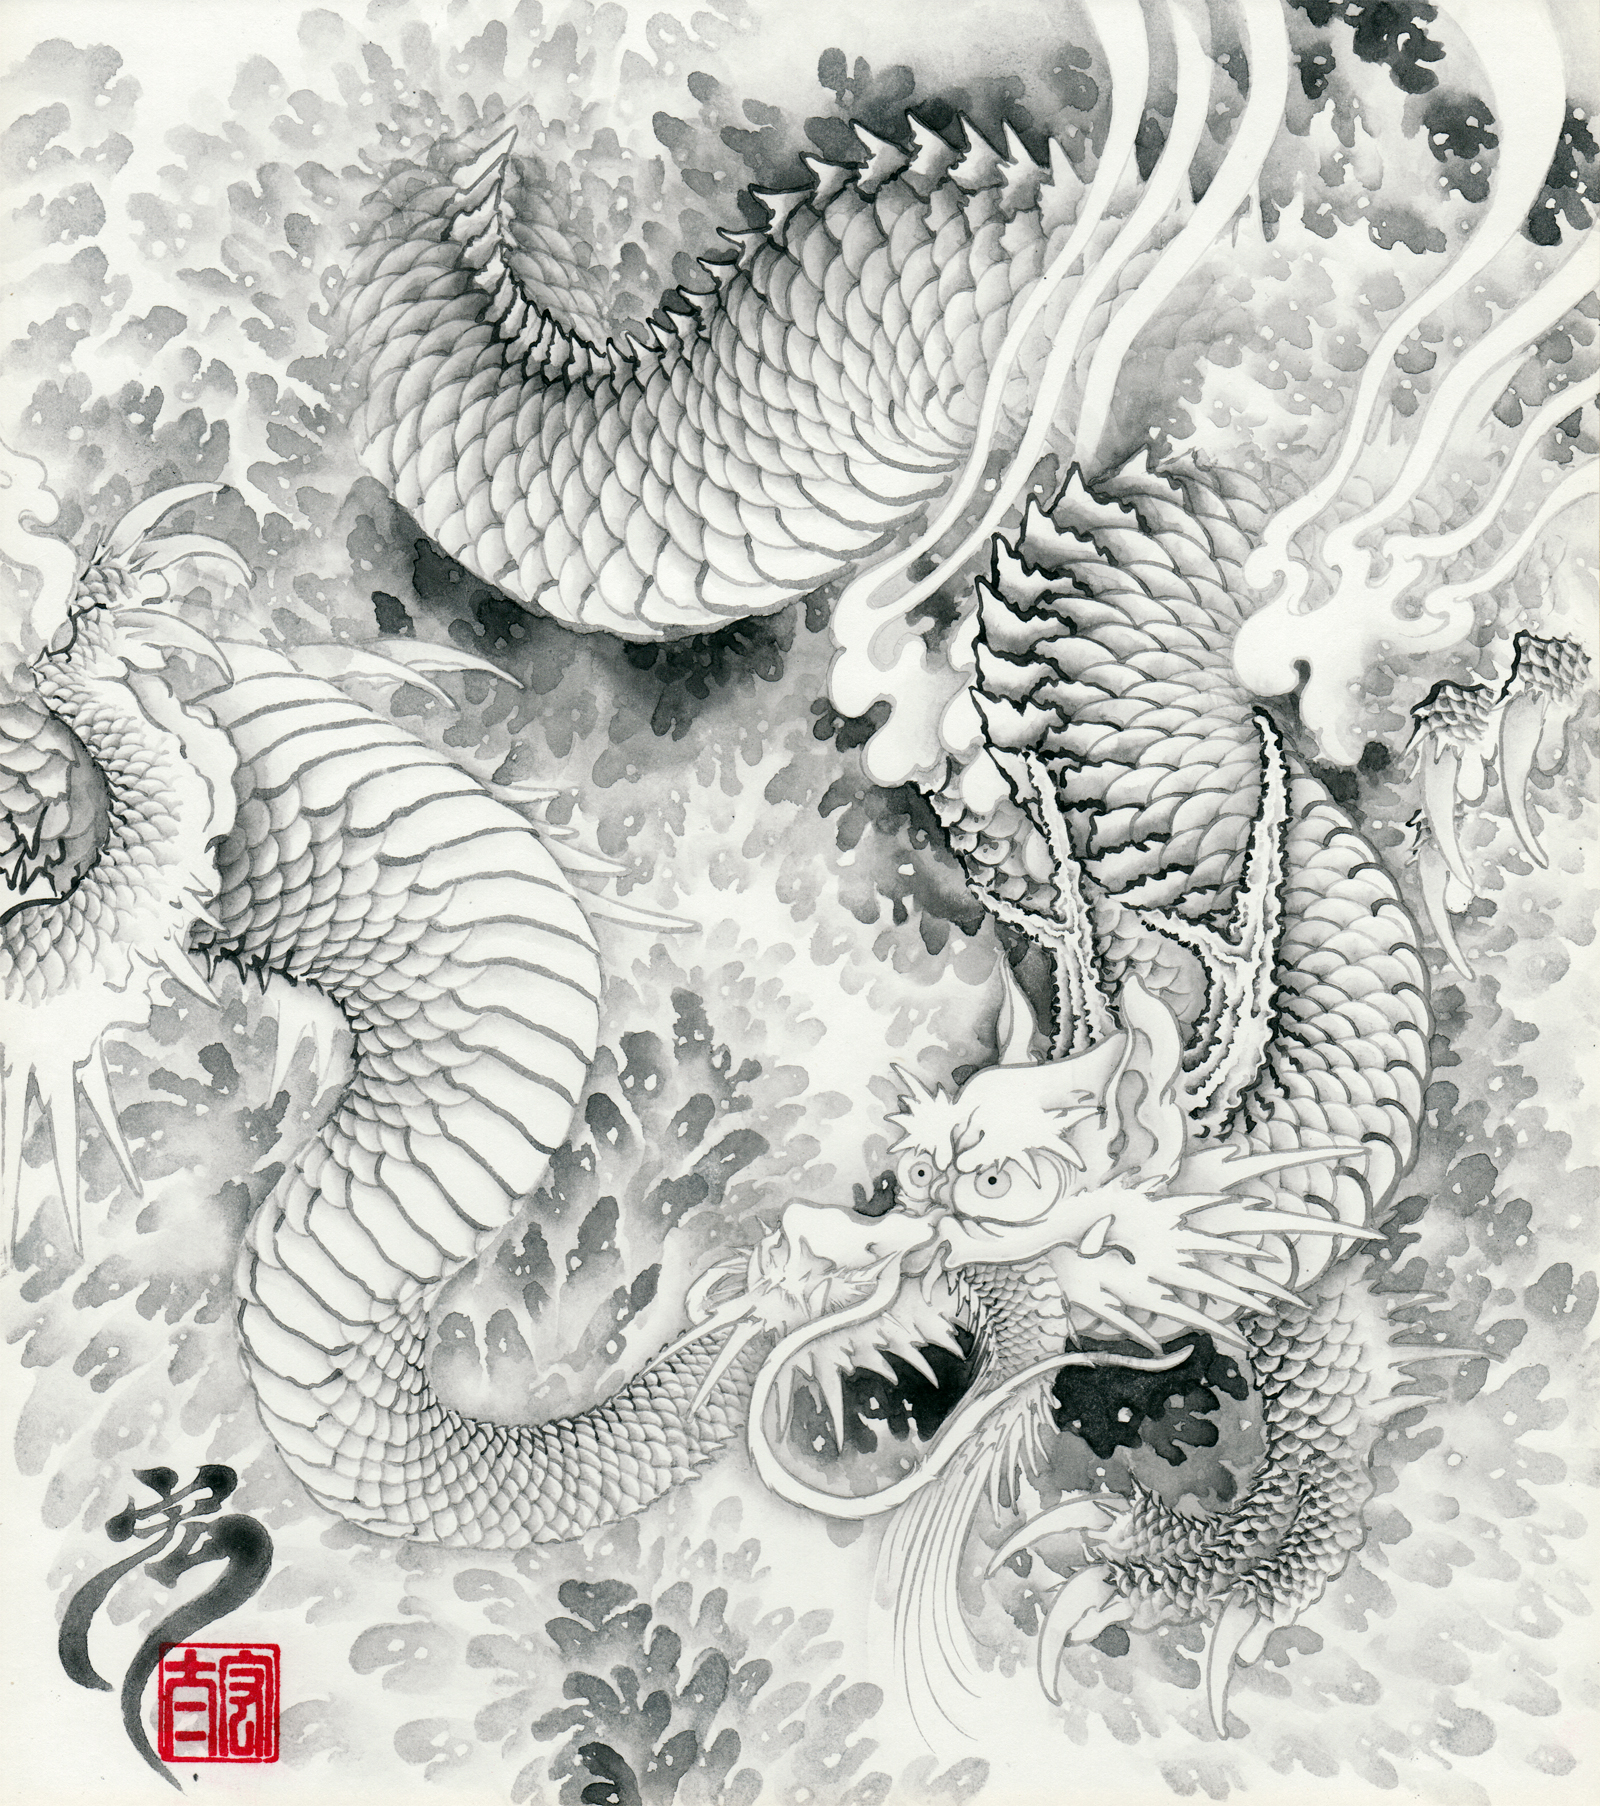 【正規販売】YH34 図録 董寿平（ドン・ショウ・ピン） 水墨画展 現代中国絵画に観る墨の世界 1985 図録